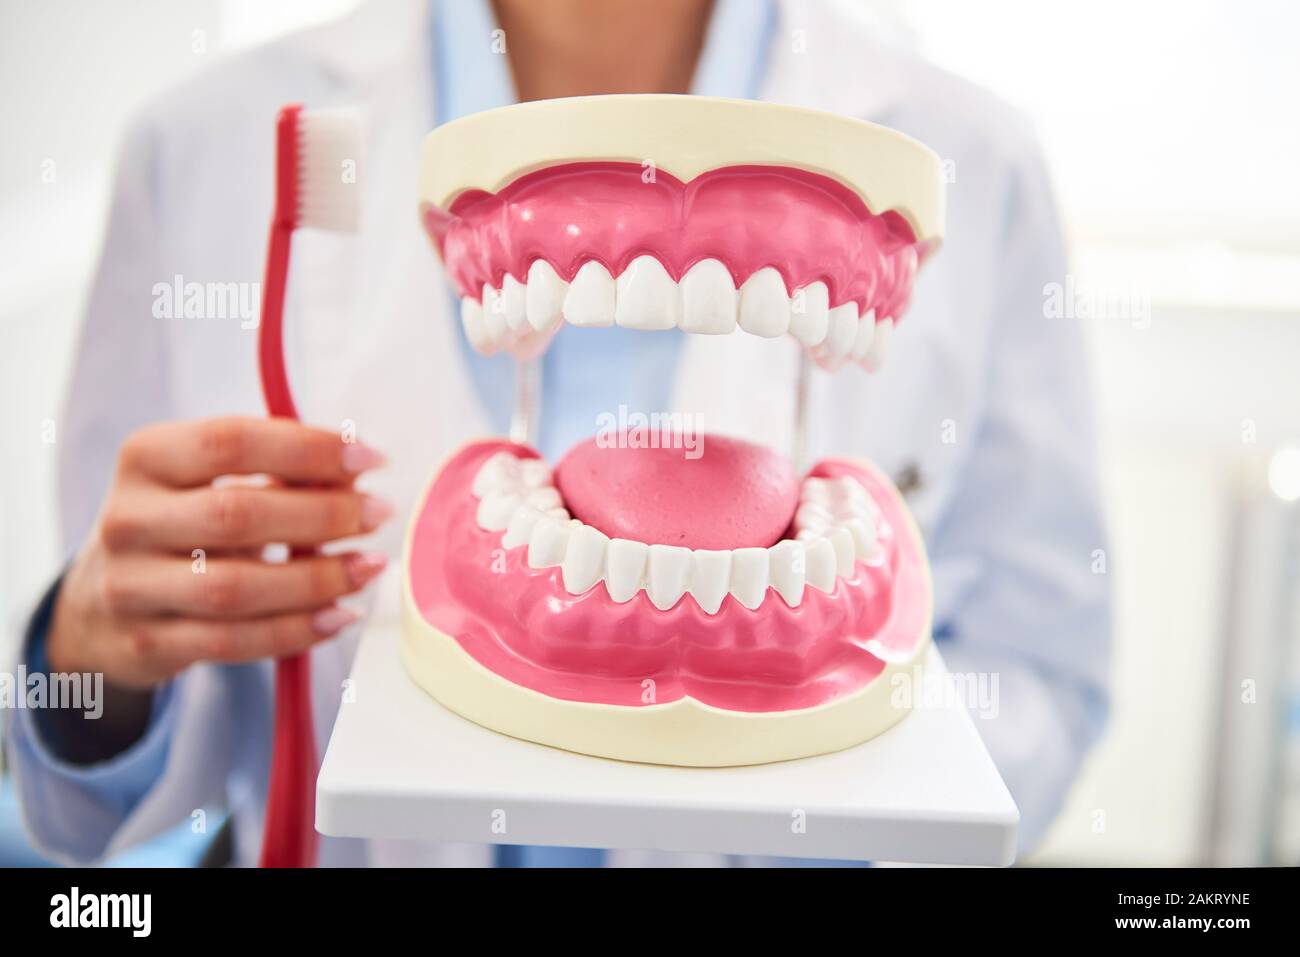 Foto de dentaduras y dentista con cepillo en el fondo Foto de stock